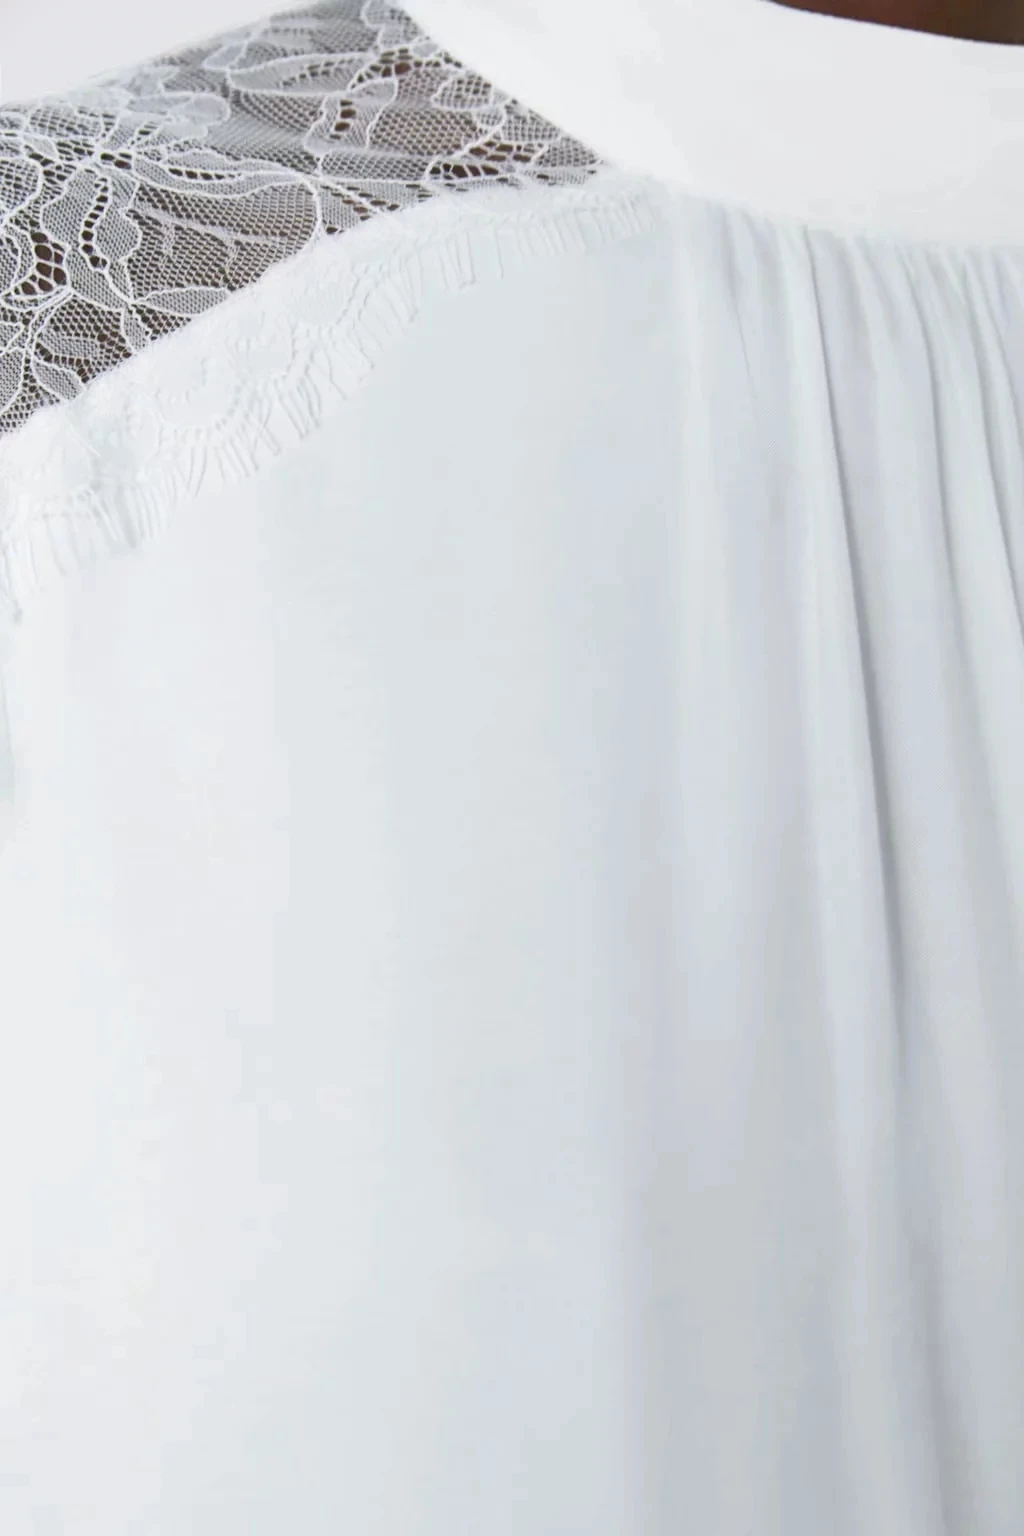 ZA блузка рубашка для женщин сшивание Тюль сатин топы белый шифон кружево прозрачный рукав Повседневная Женская блузка женская одежда